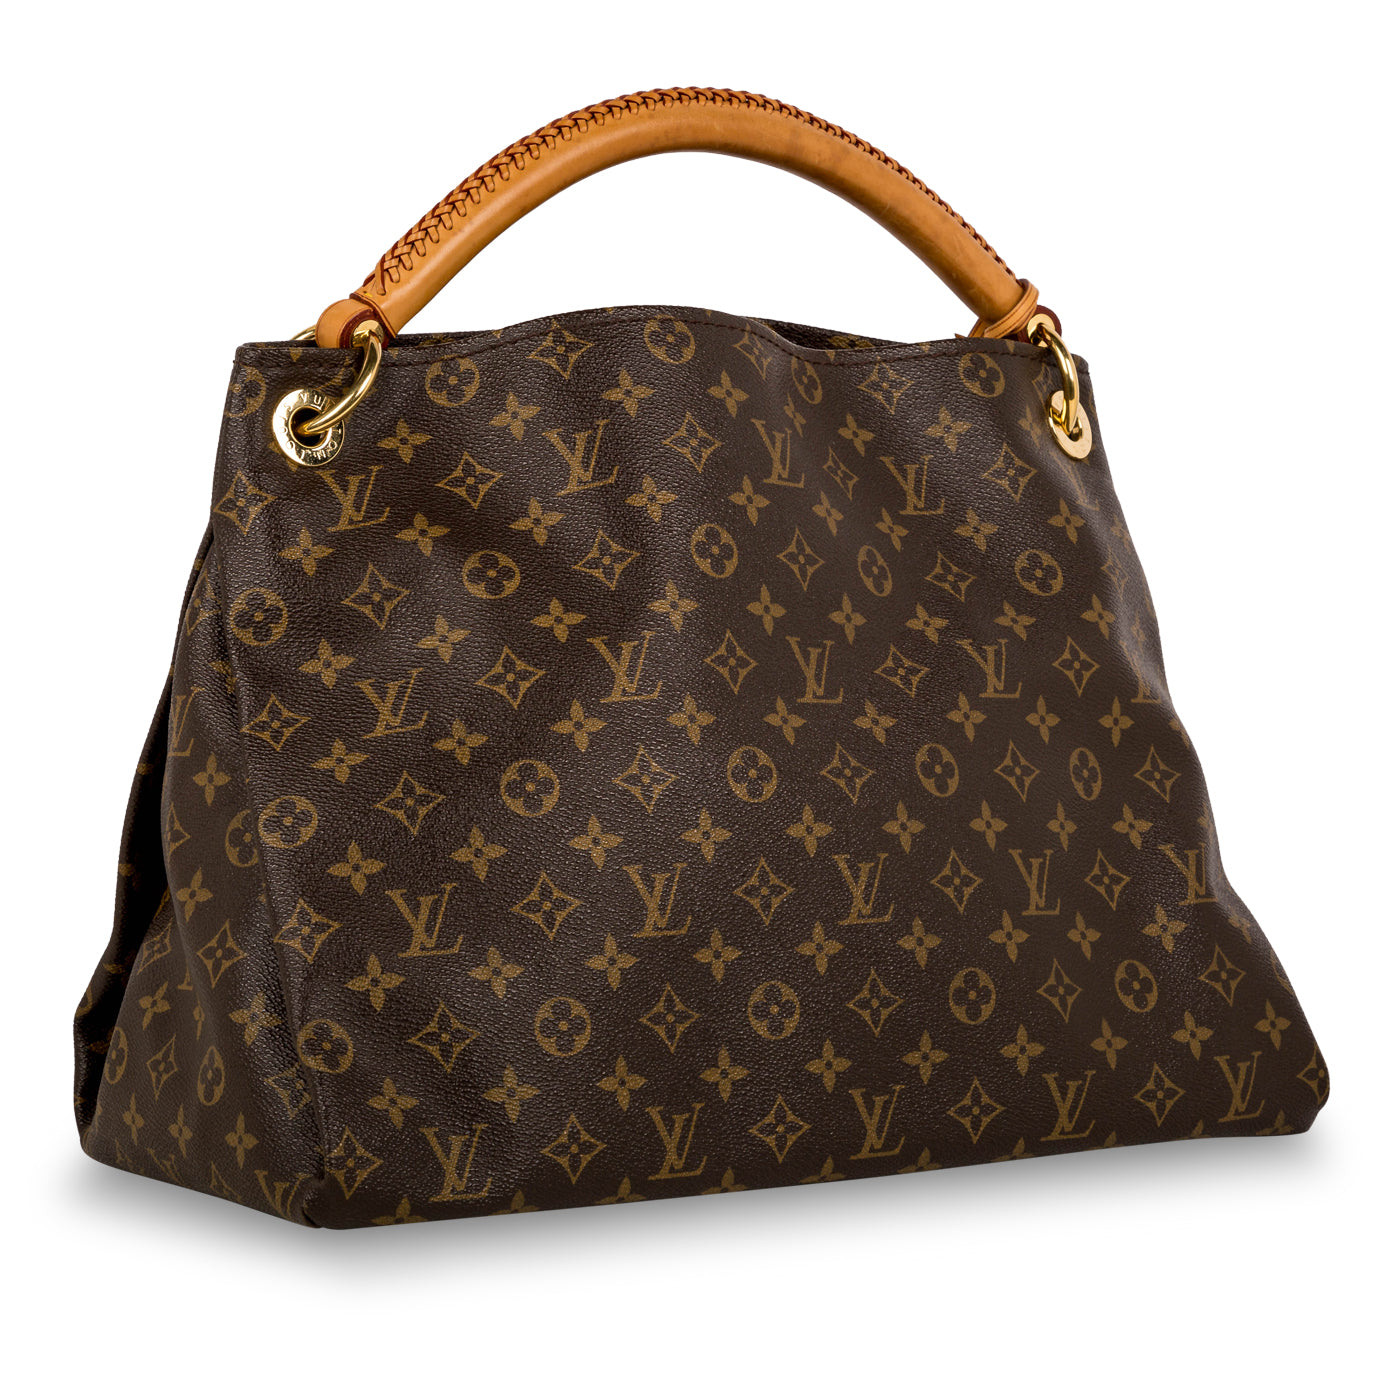 Louis Vuitton Artsy Handbag 389820